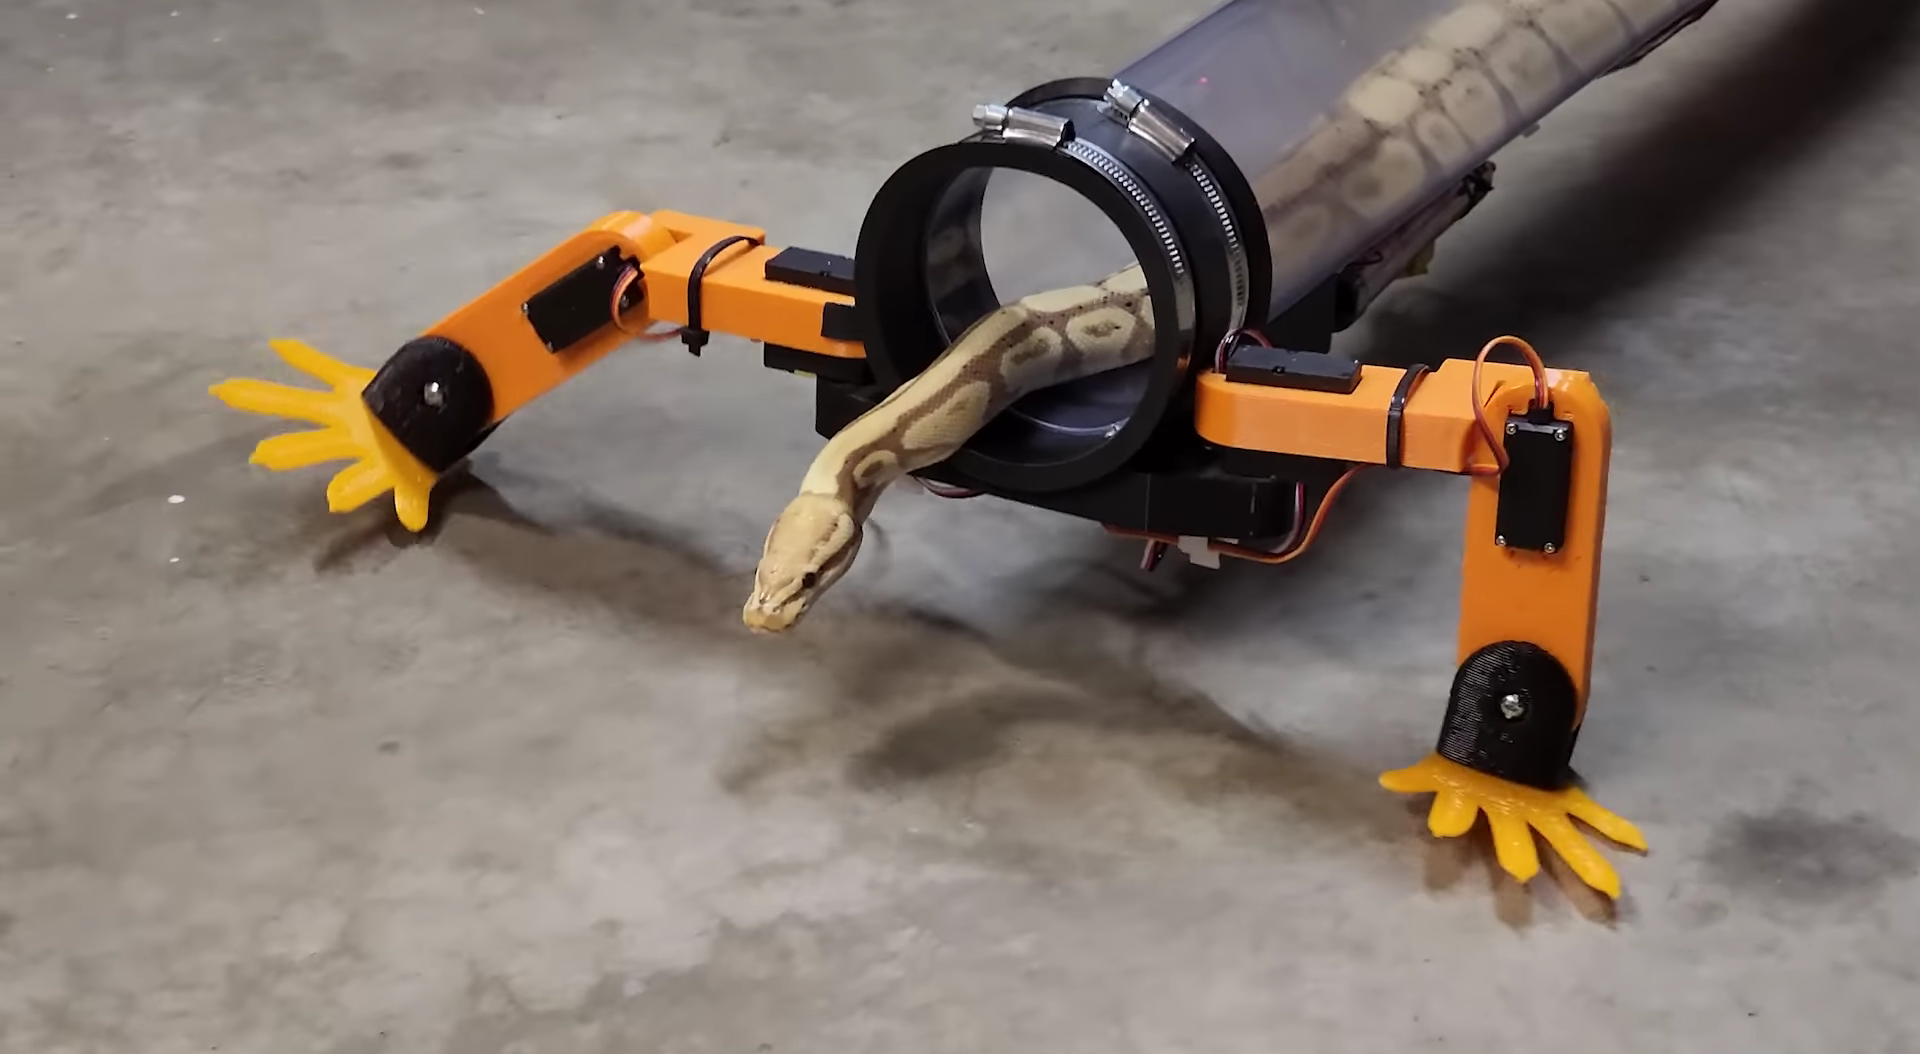 Інженер розробив роботизовані ноги для змії - їй сподобалося